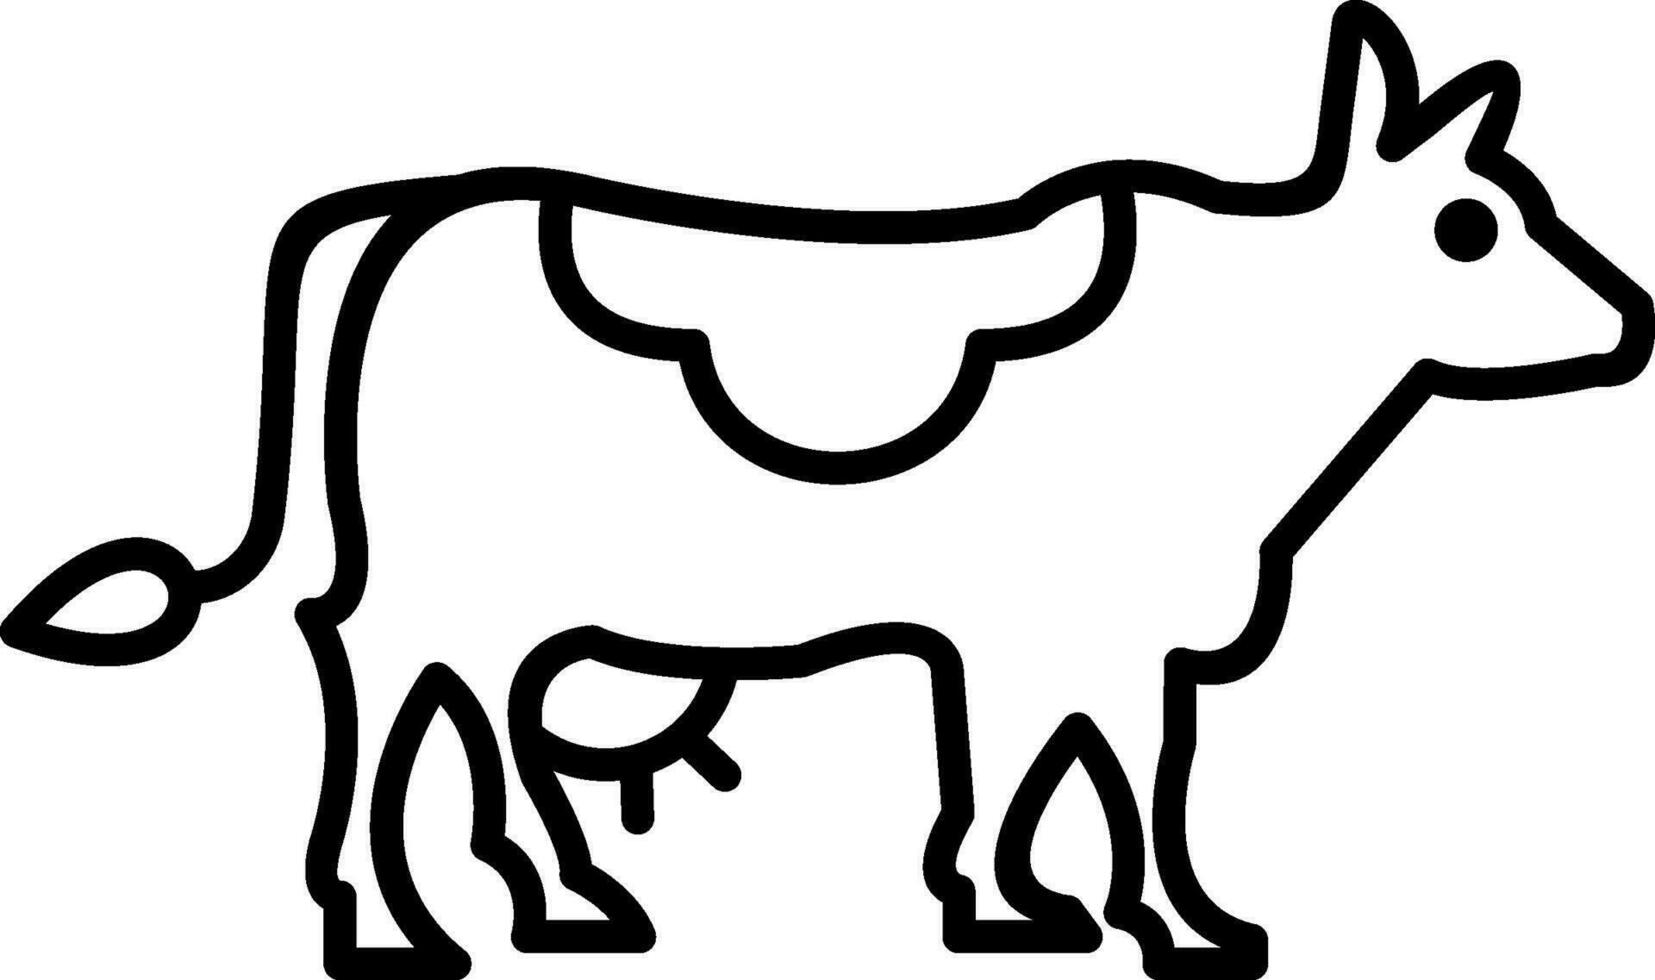 icona della linea della mucca vettore